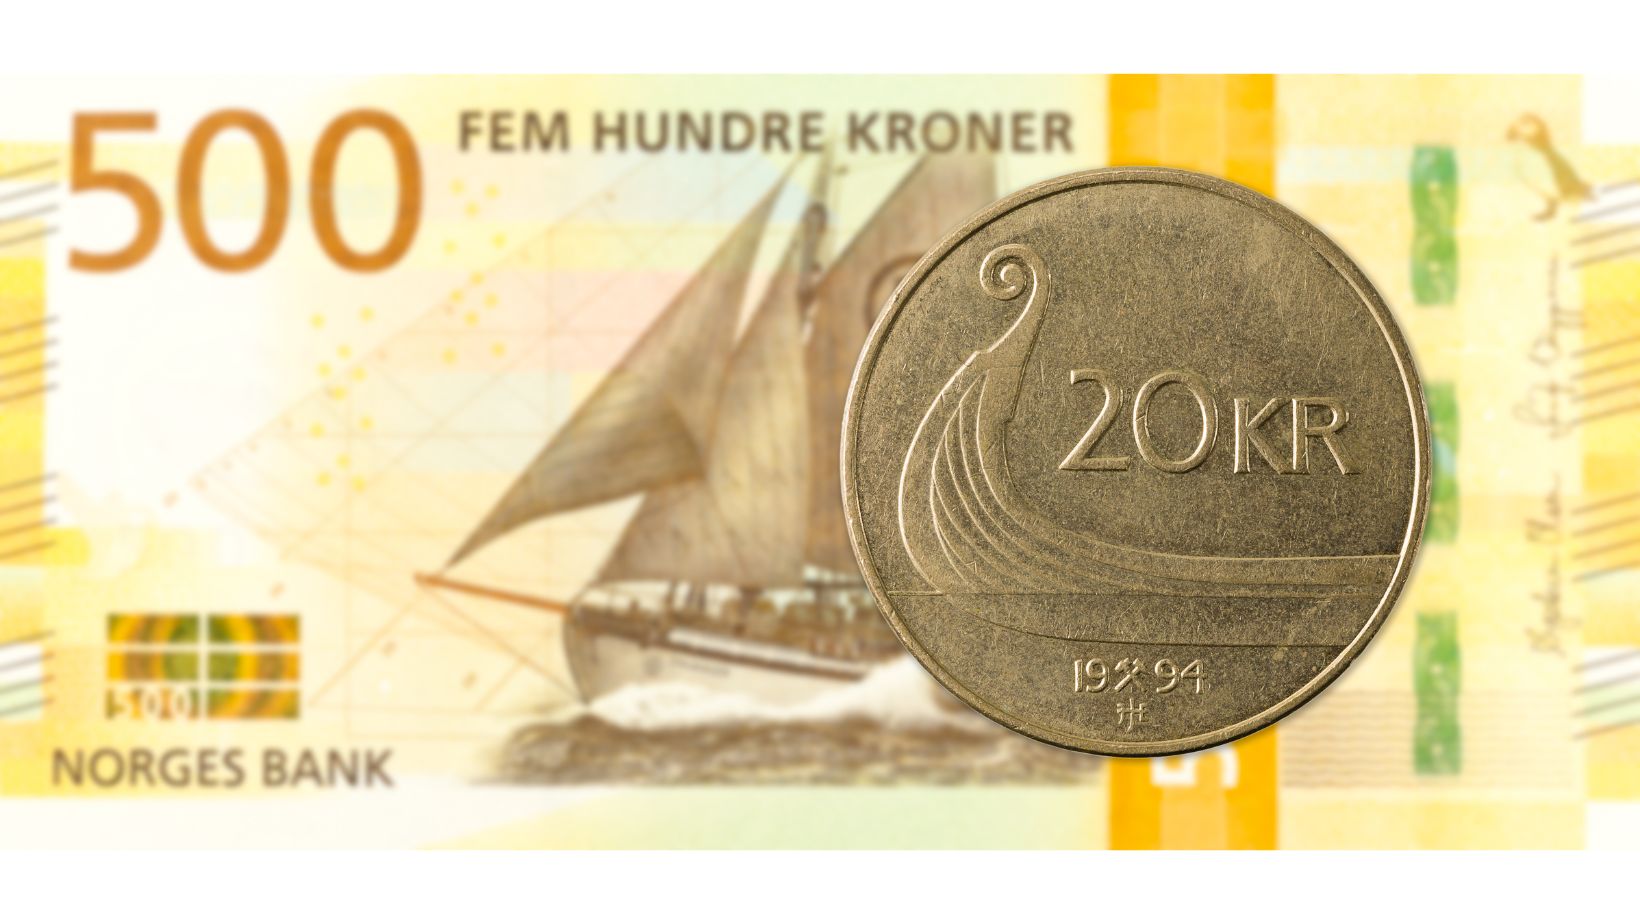 500 NOK बैंकनोट और 20 NOK सिक्का